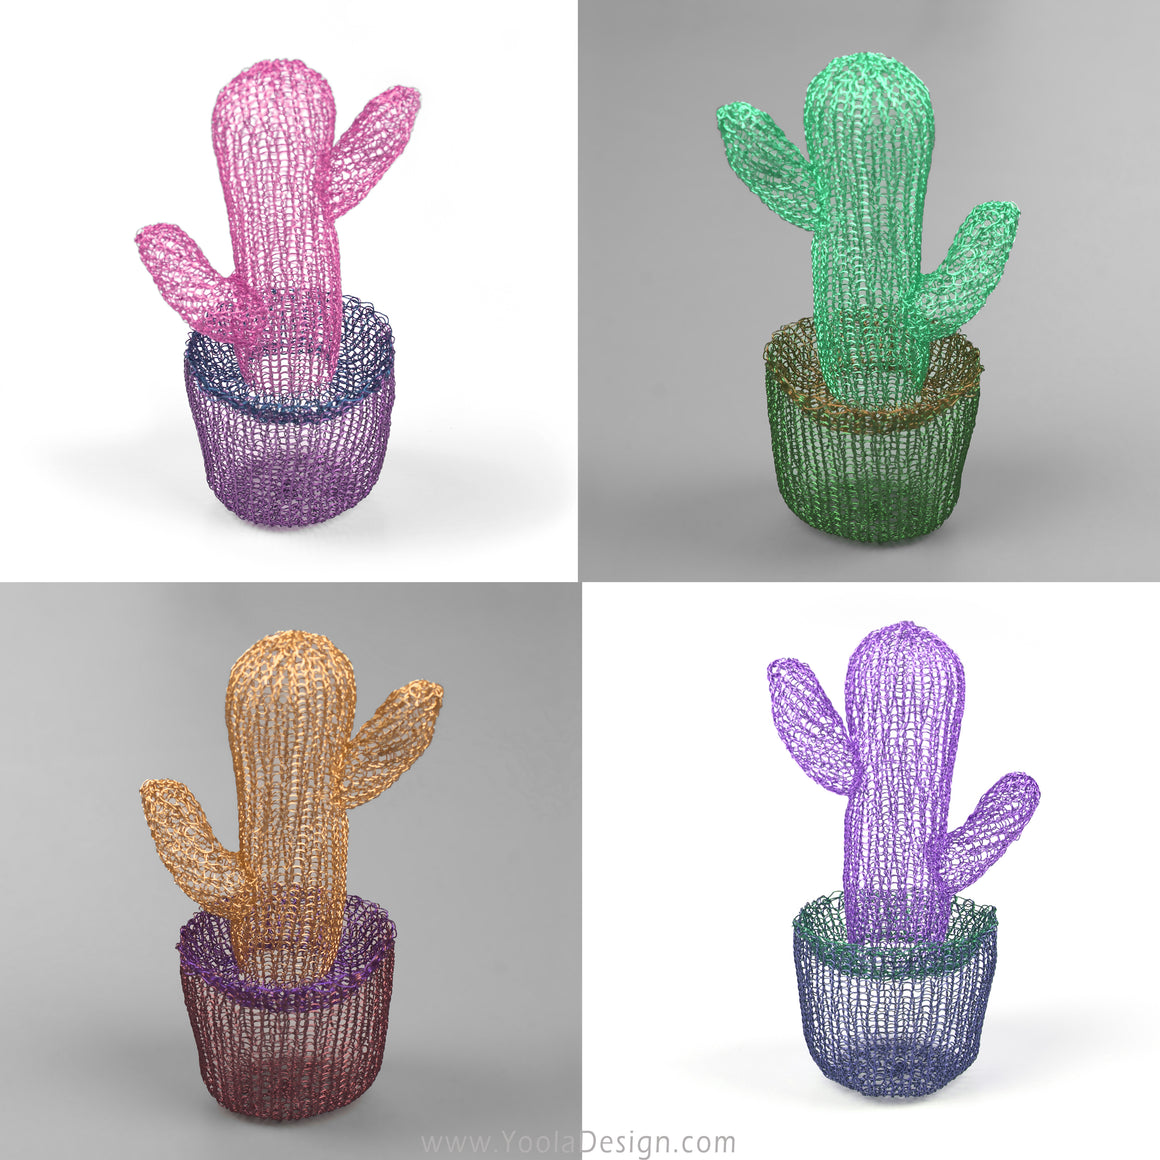 Mini Cactus - Cactus Decor - Yooladesign